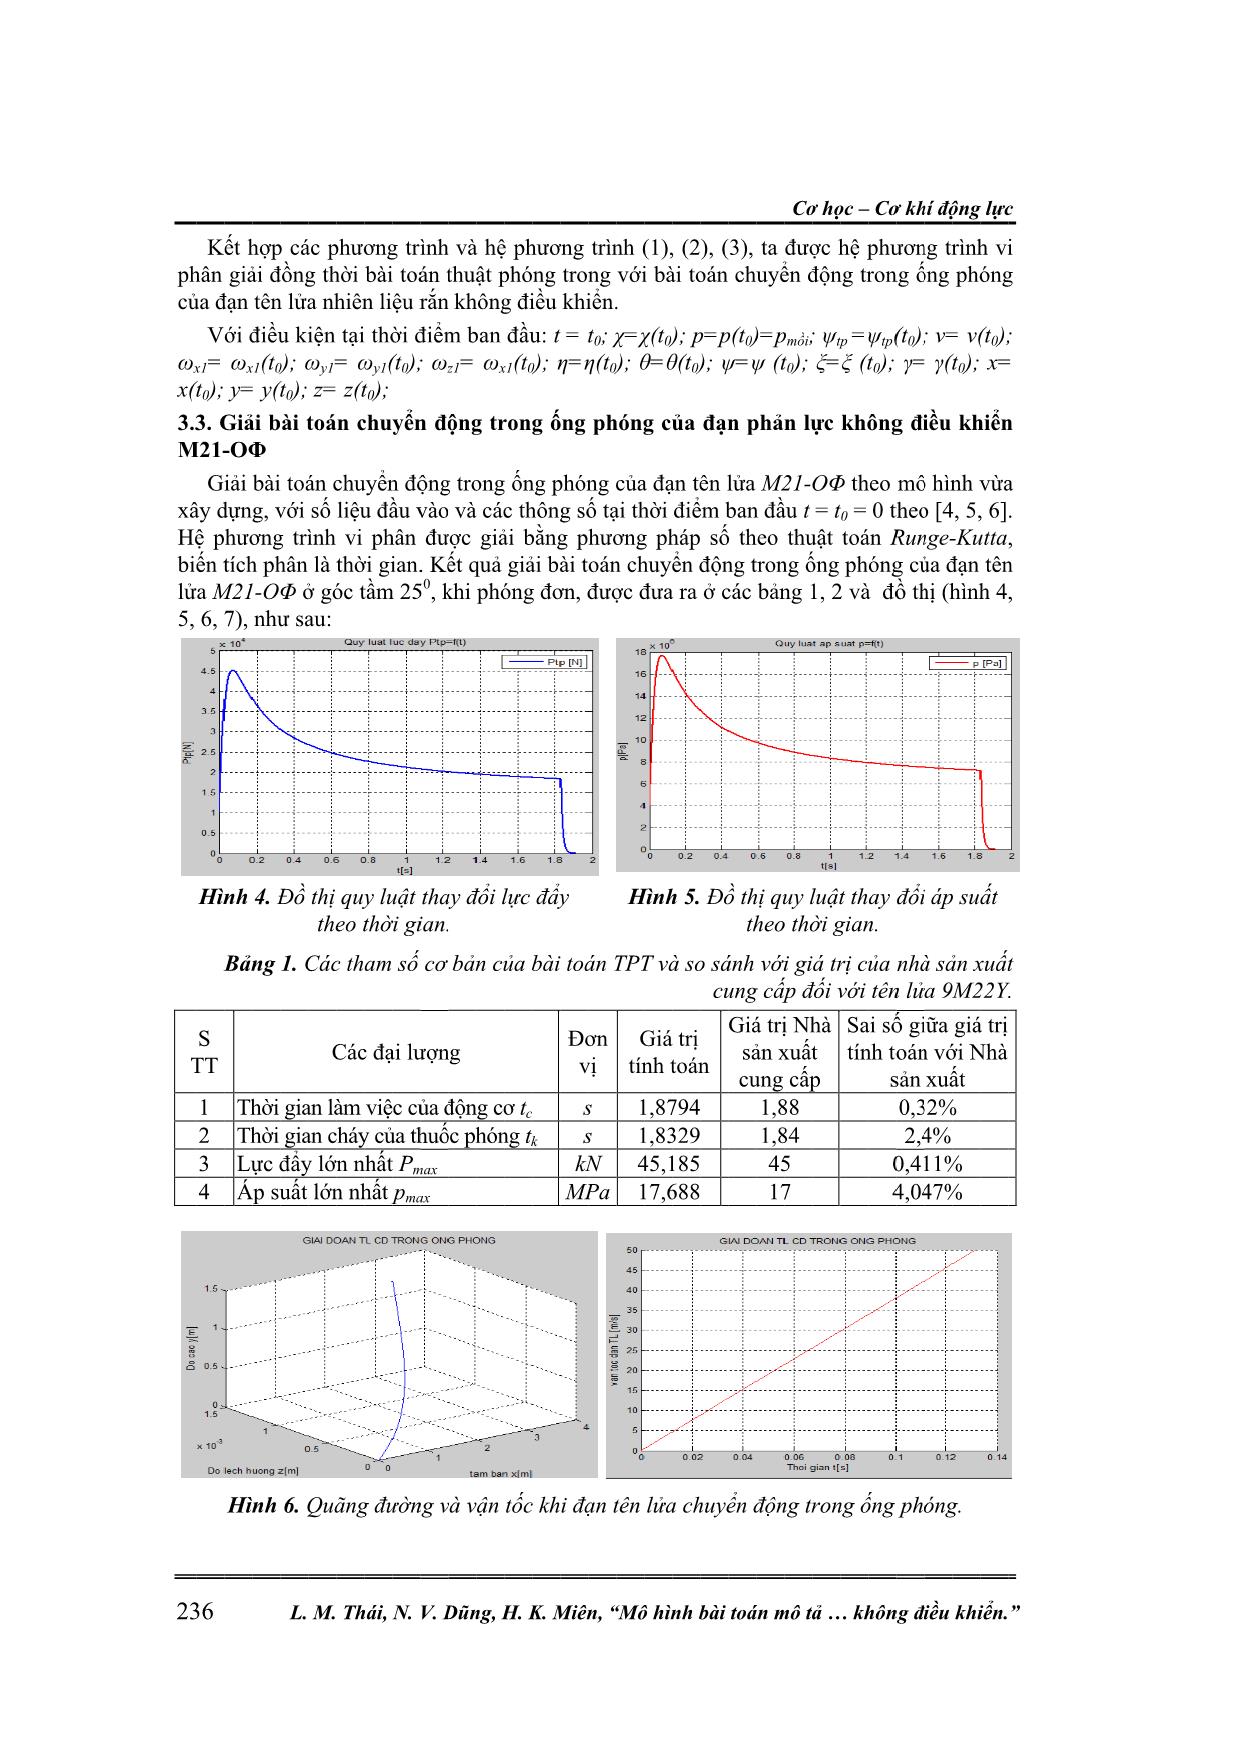 Mô hình bài toán mô tả chuyển động trong ống phóng của tên lửa nhiên liệu rắn không điều khiển trang 5